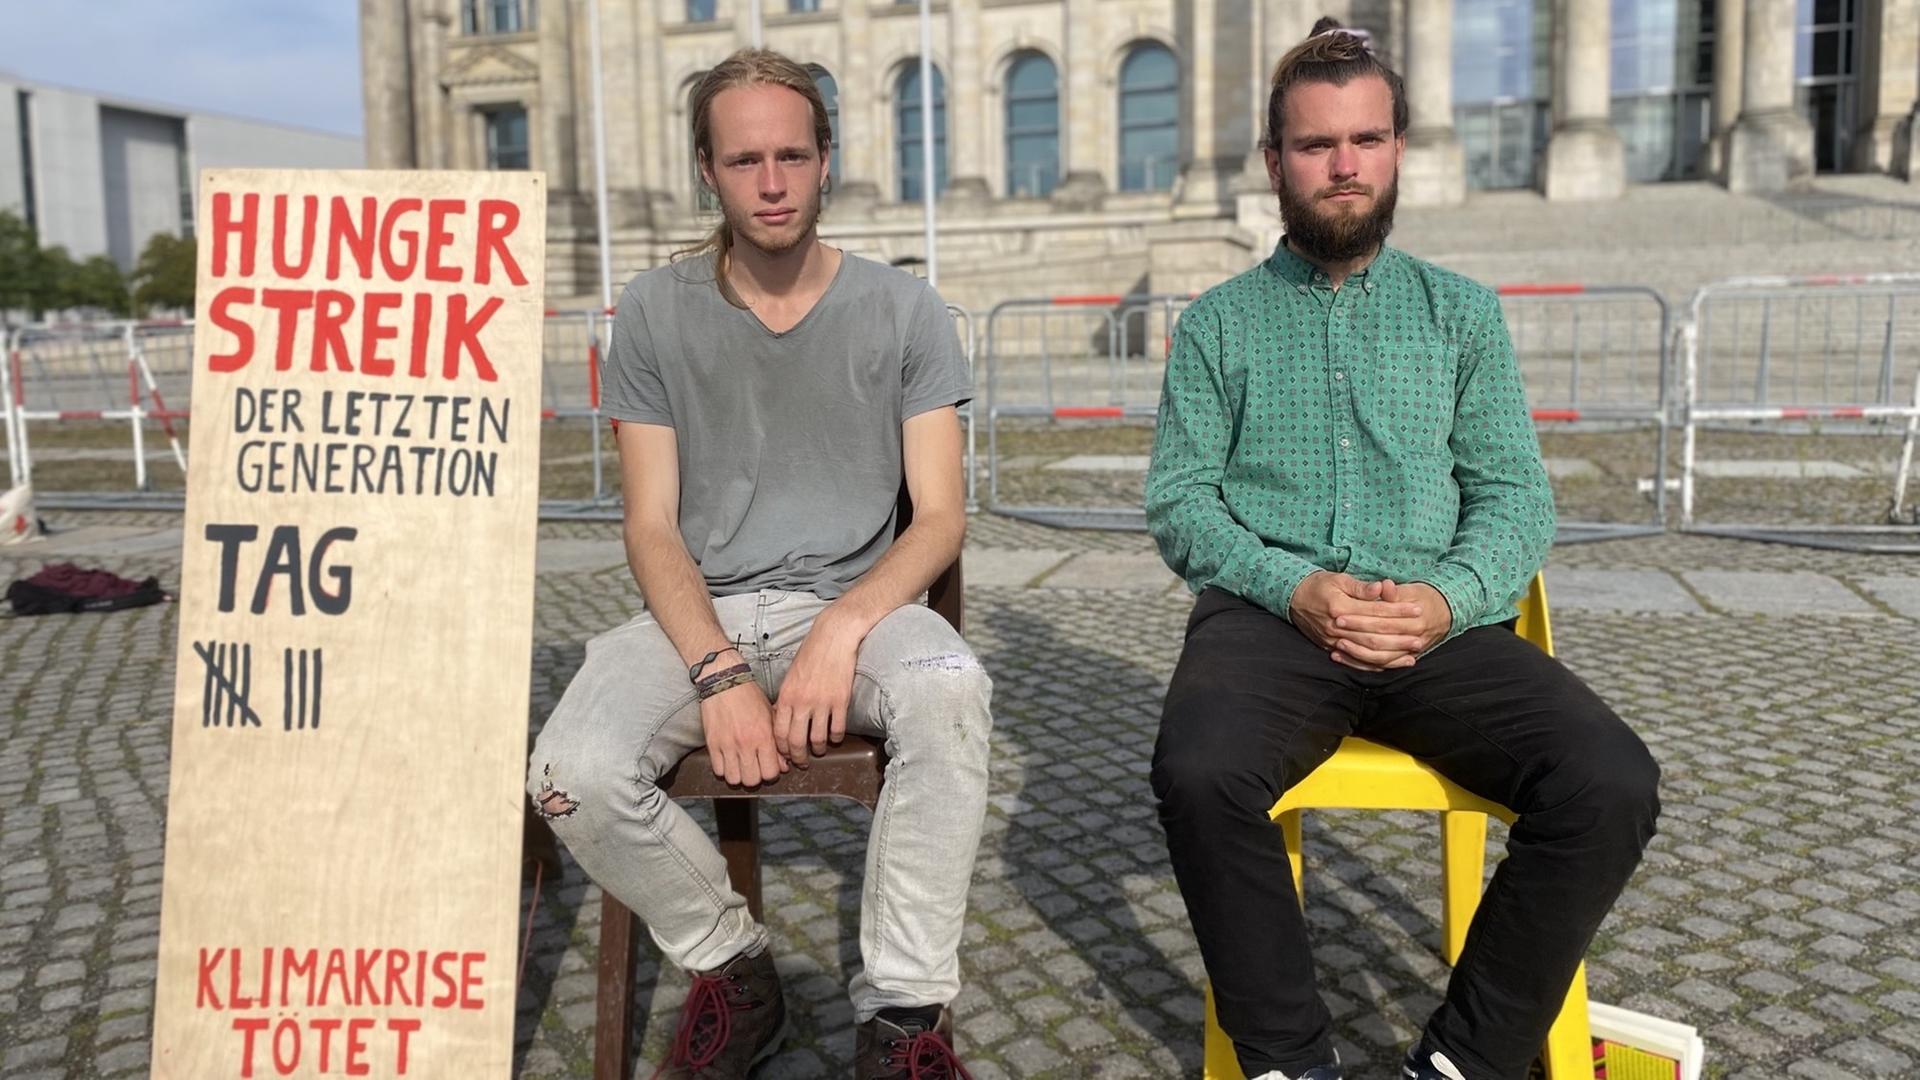 Simon Helmstedt und Jacob Heinze vor einem Schild, auf dem sie die Tage ihres Hungerstreiks zählen.